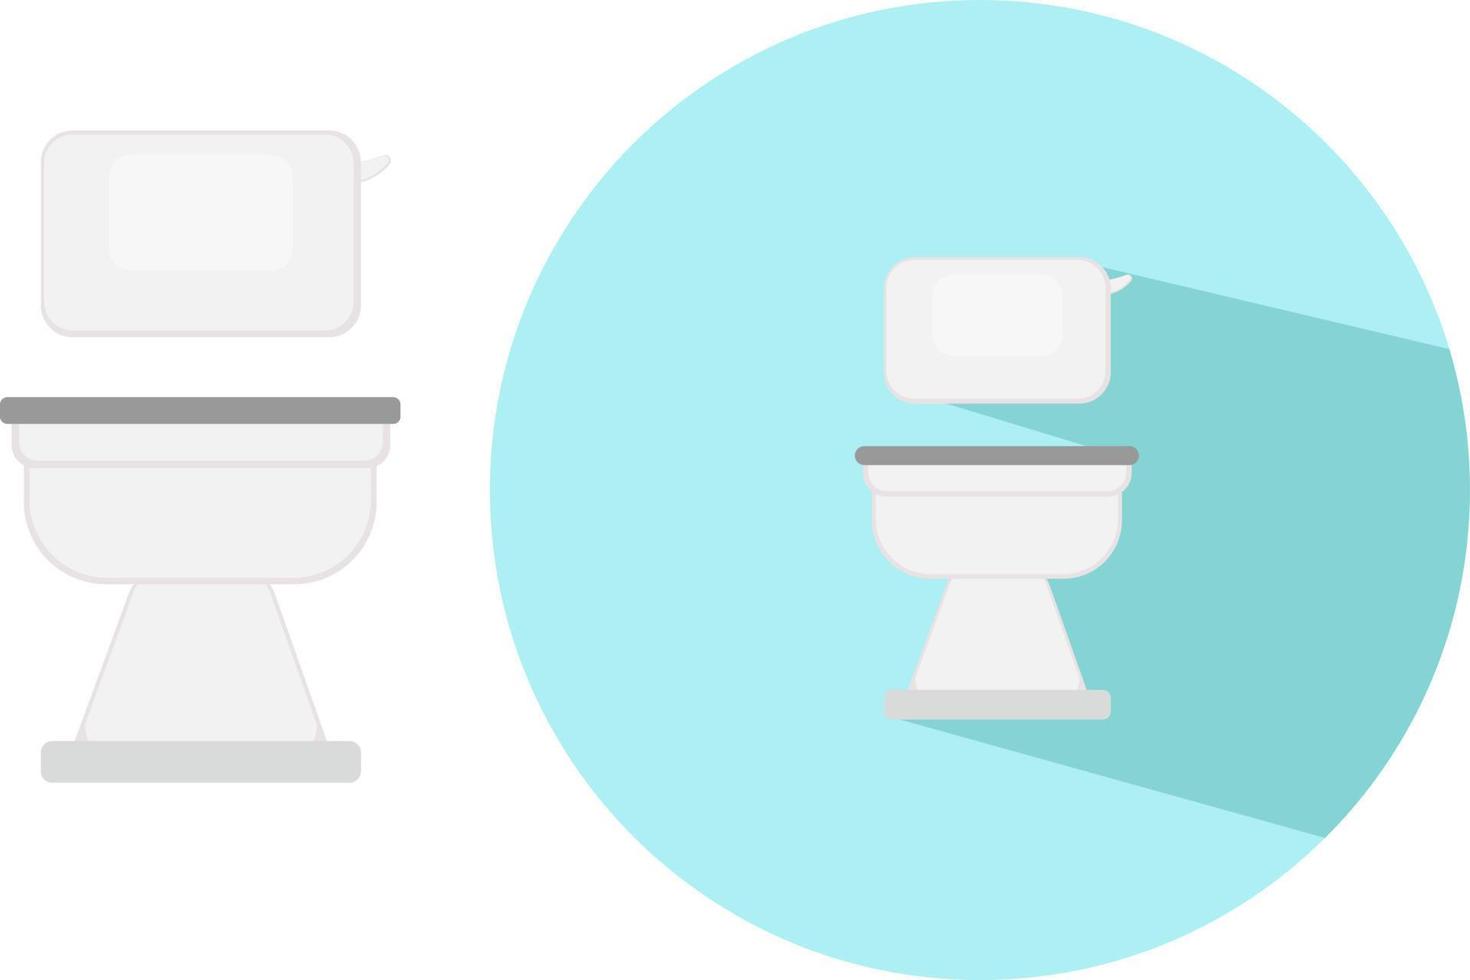 White toilet bowl ,illustration, vector on white background.